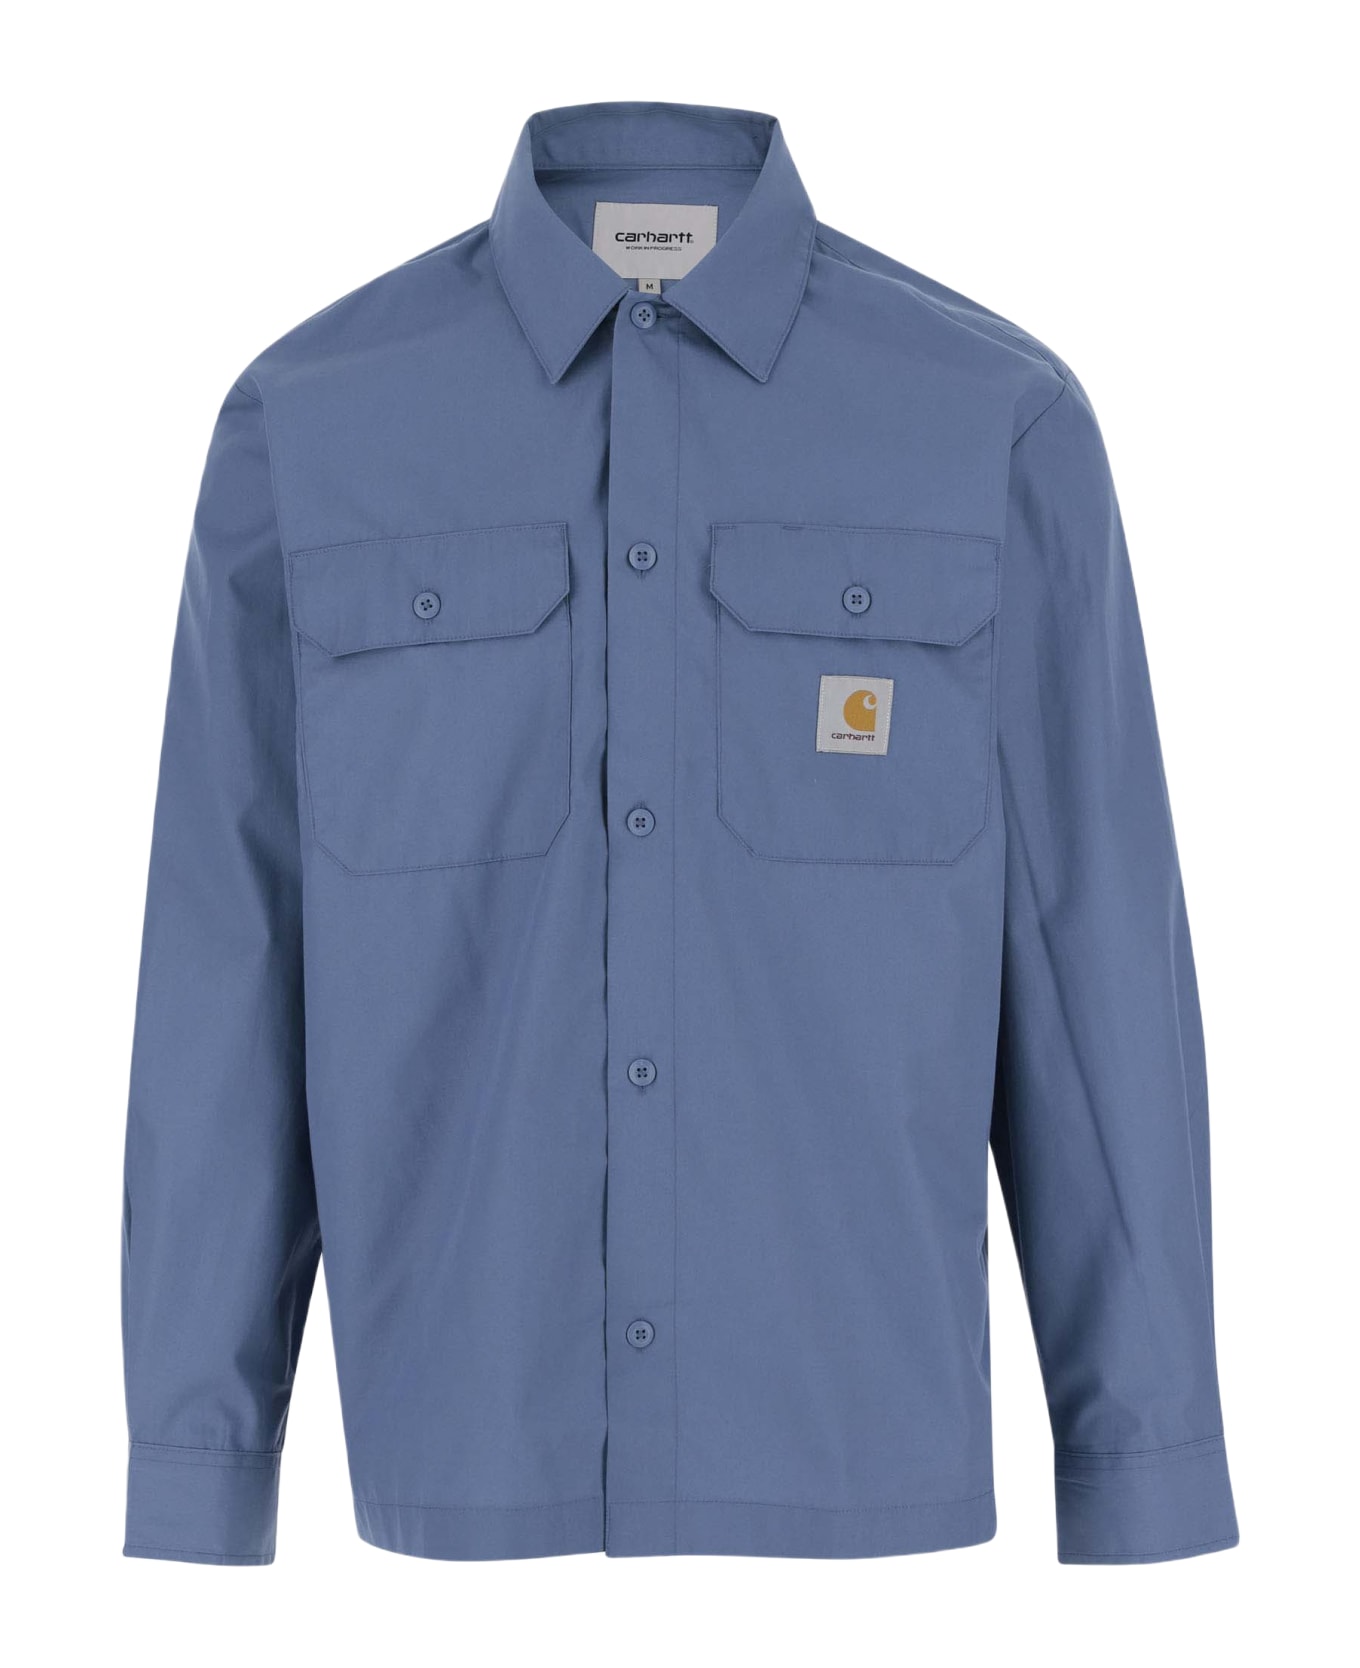 Carhartt Cotton Blend Shirt With Logo - Light Blue